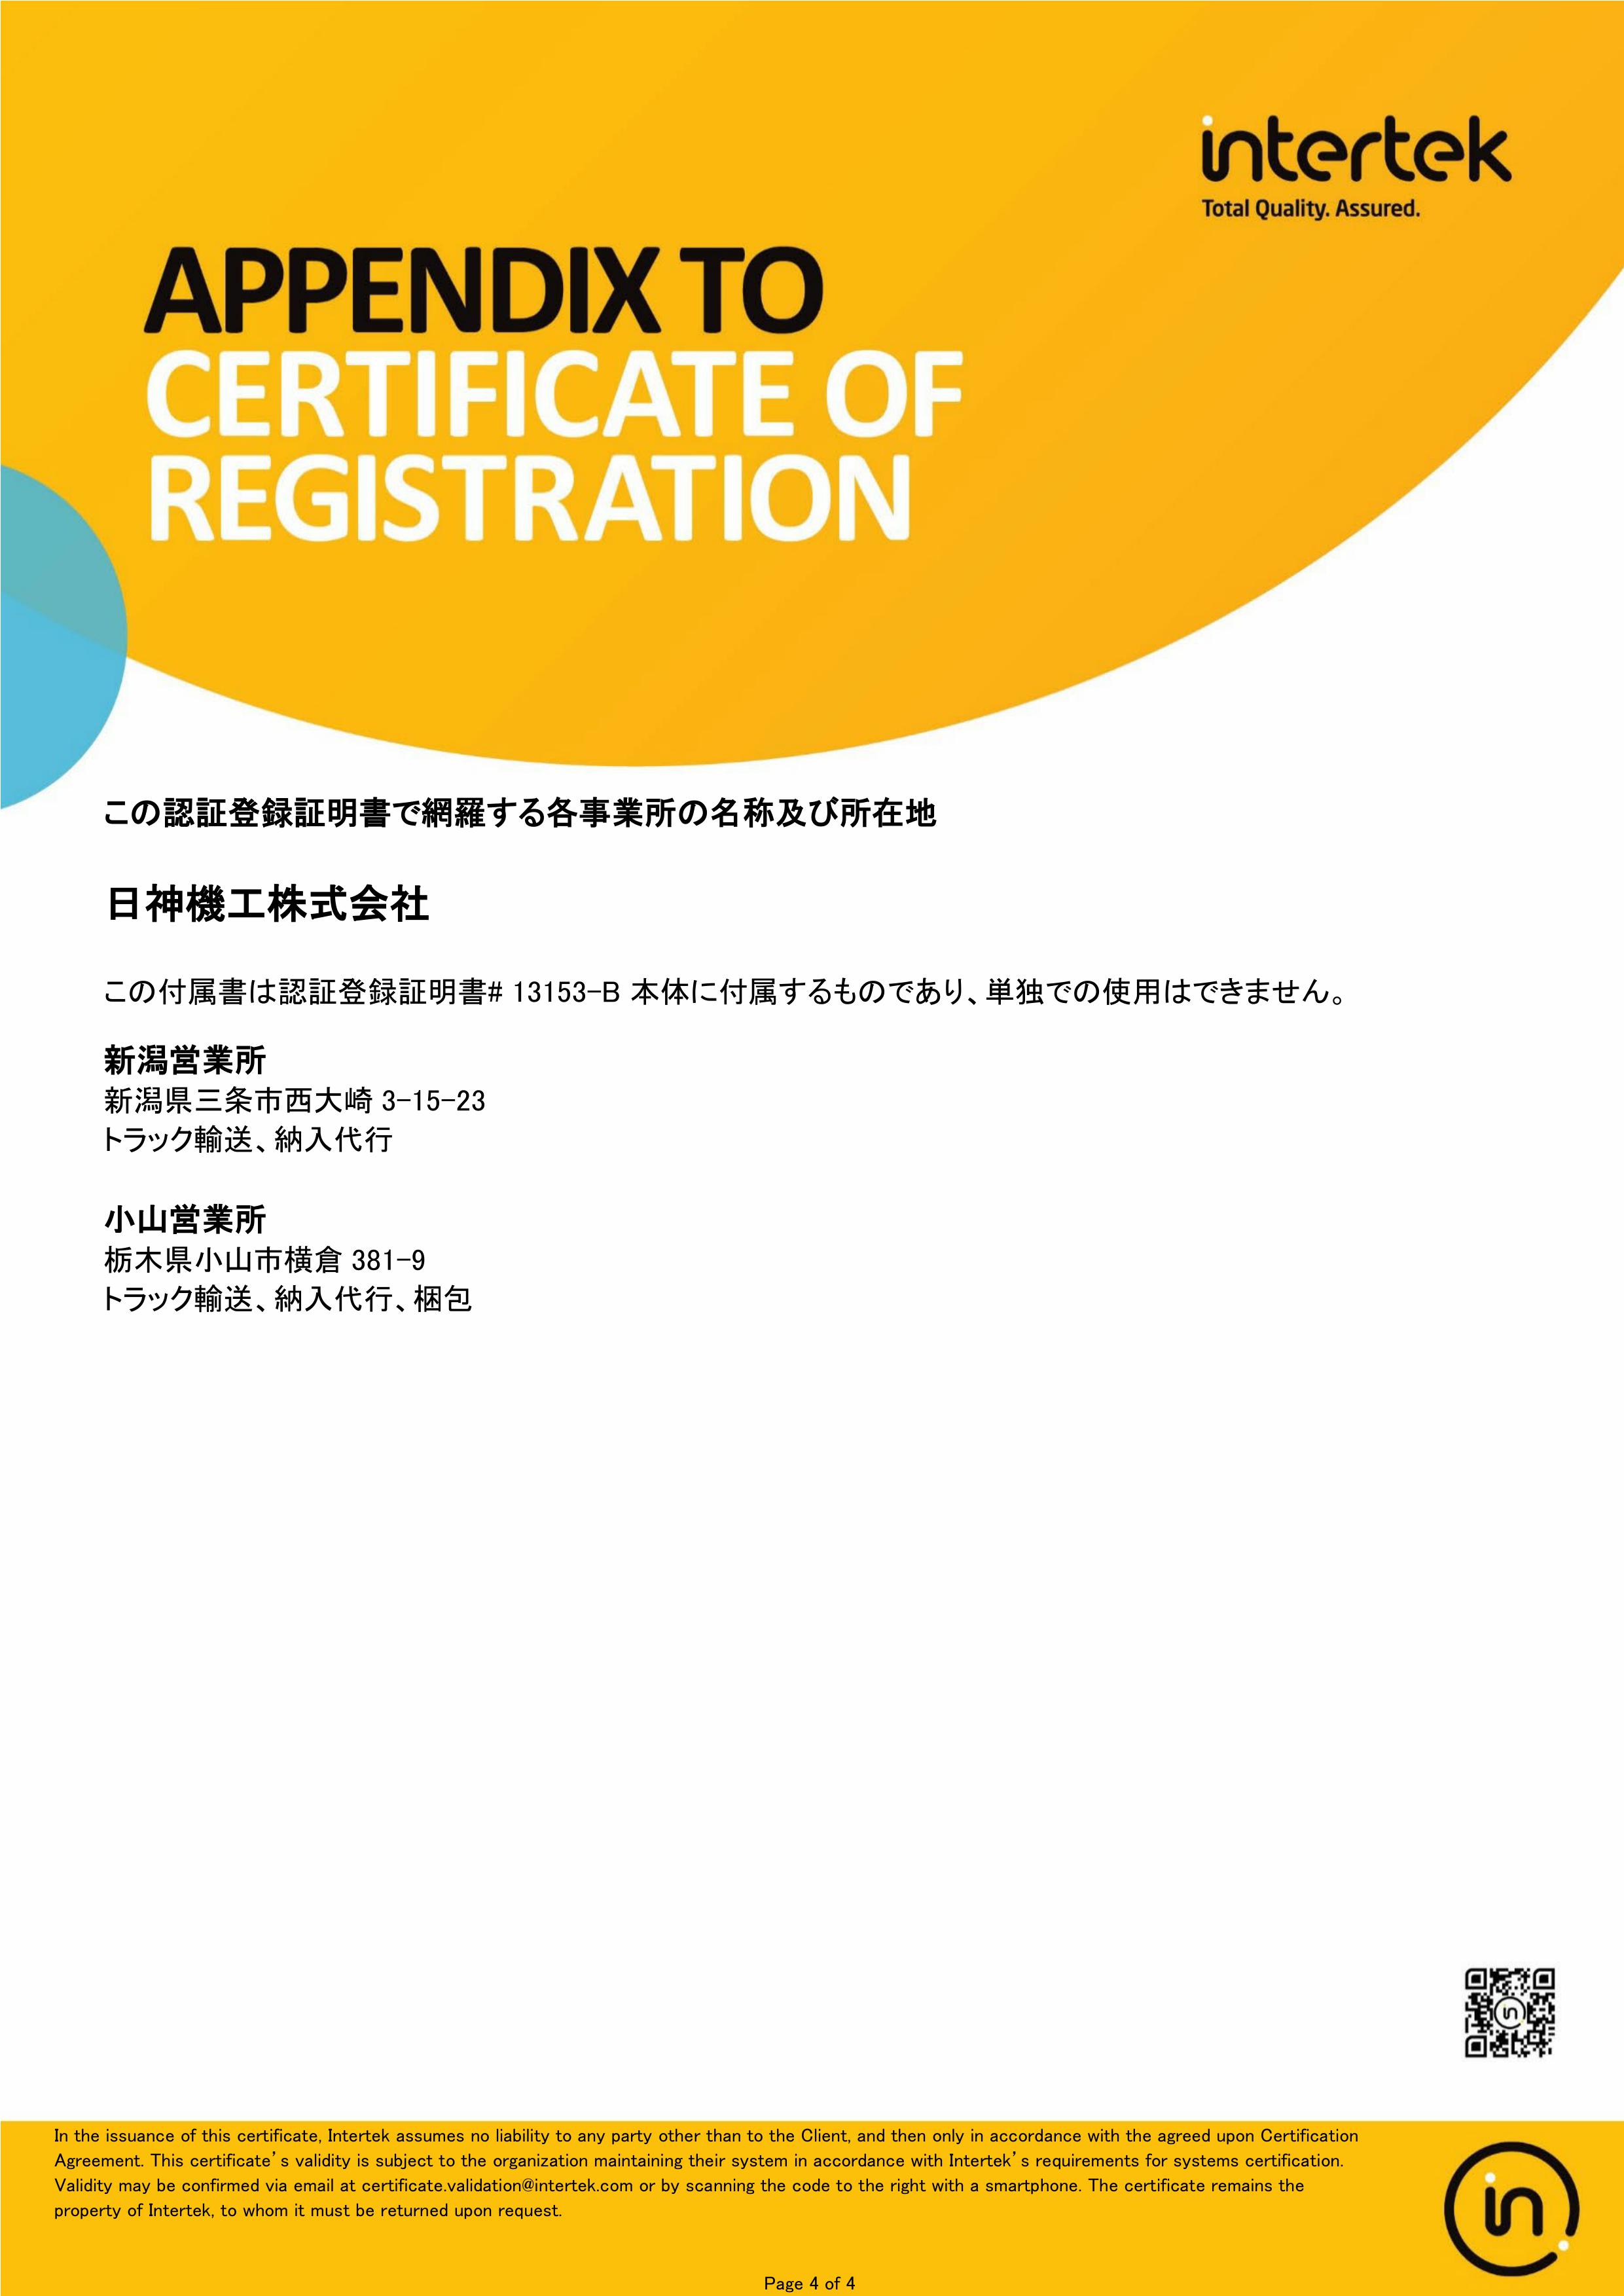 ISO14001登録証4分の4ページ目を表示しております